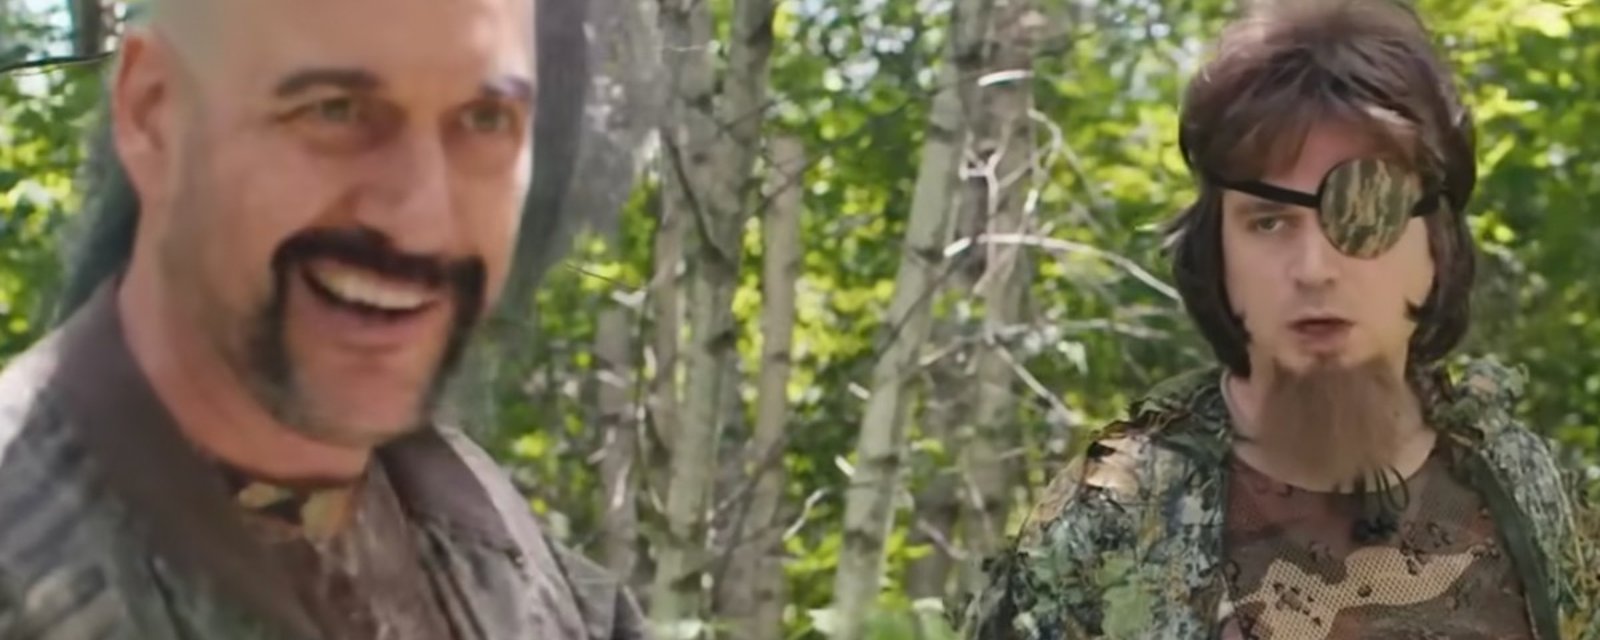 Martin Matte et Arnaud Soly jouent des survivalistes vraiment pas doués dans une nouvelle vidéo complètement délirante